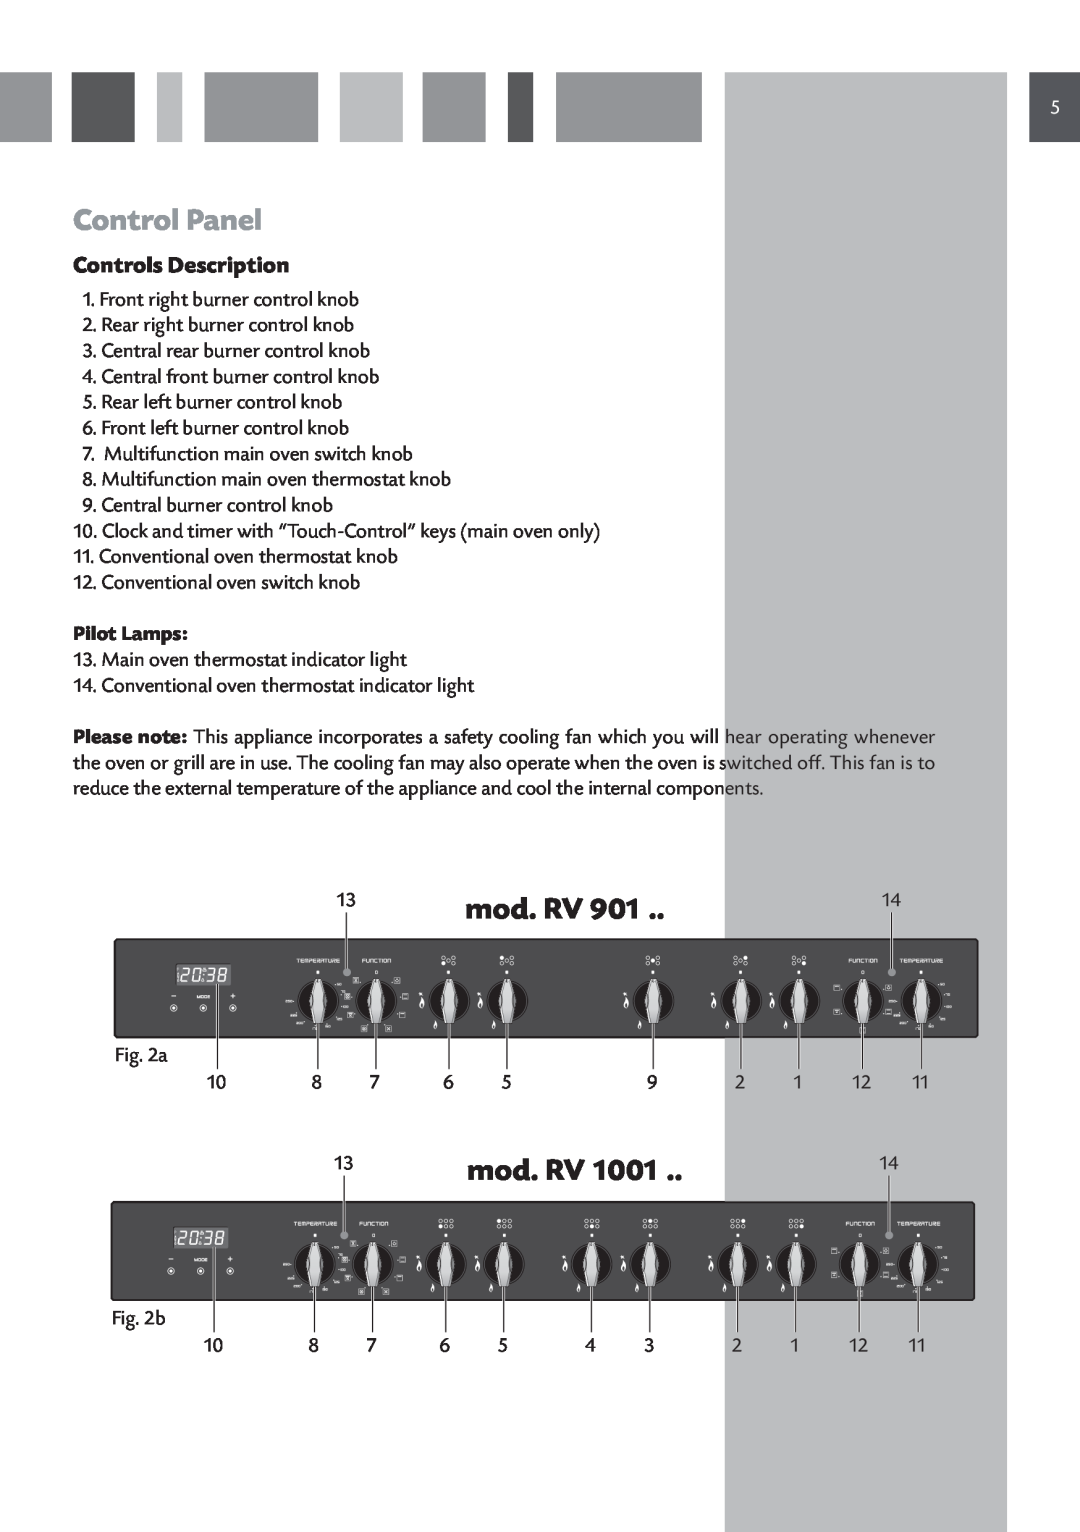 CDA RV 1001, RV 901 manual Control Panel, mod. RV, Controls Description, Pilot Lamps 